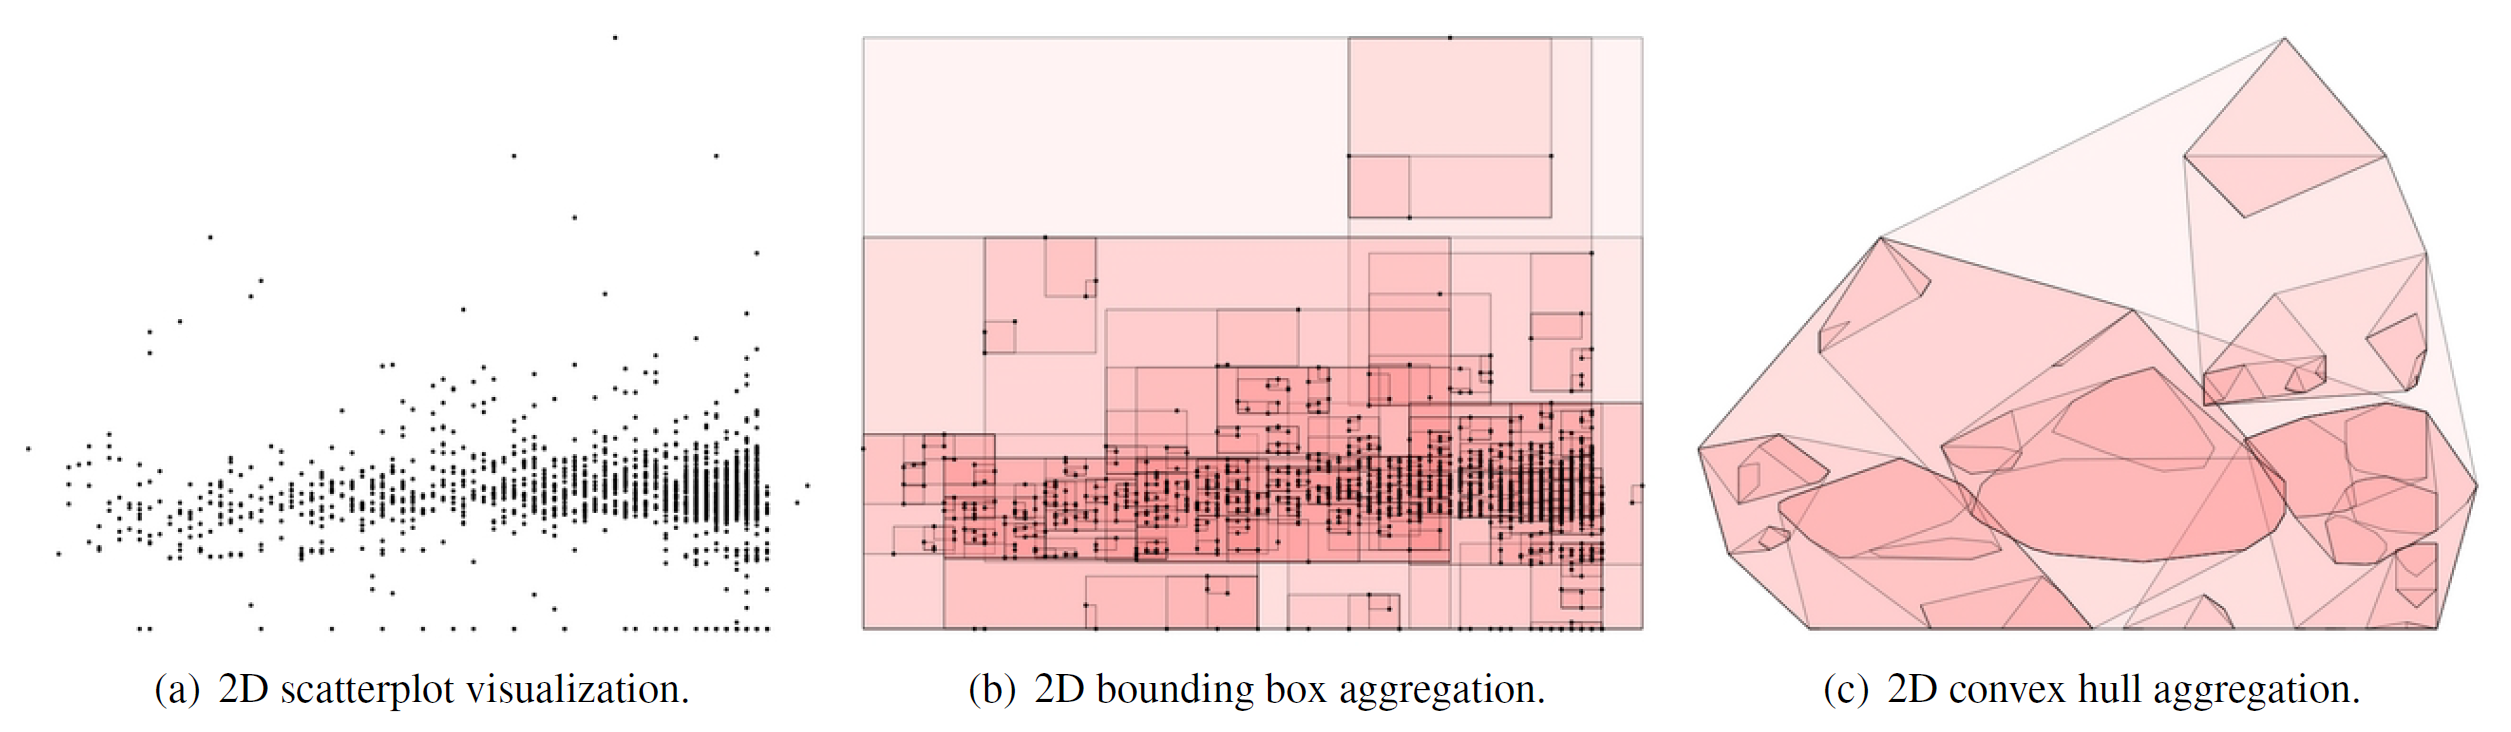 계층형 데이터 변수를 활용한 시각적 집산(Visual Aggregation)